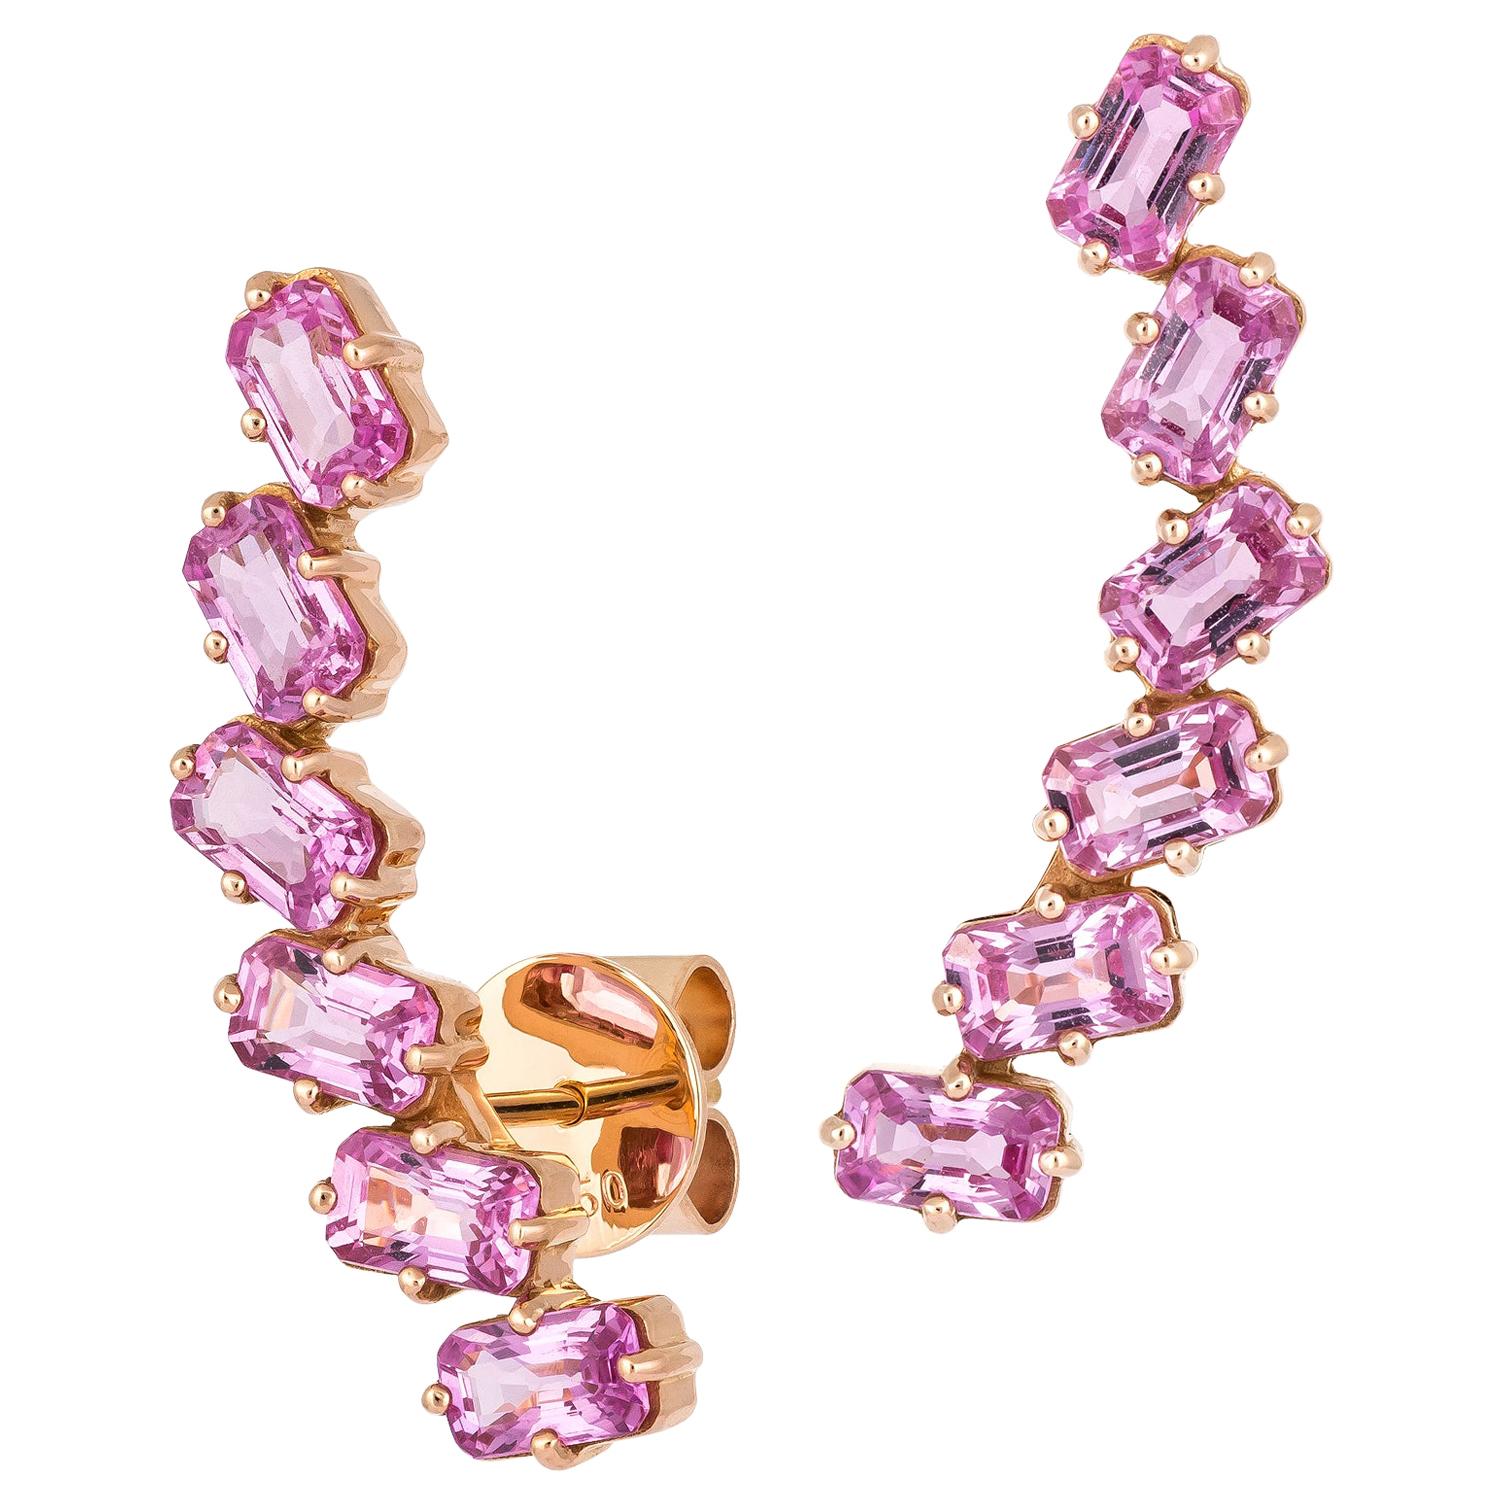 Diamant-Ohrringe aus 18 Karat Gold mit weißen Diamanten für Sie